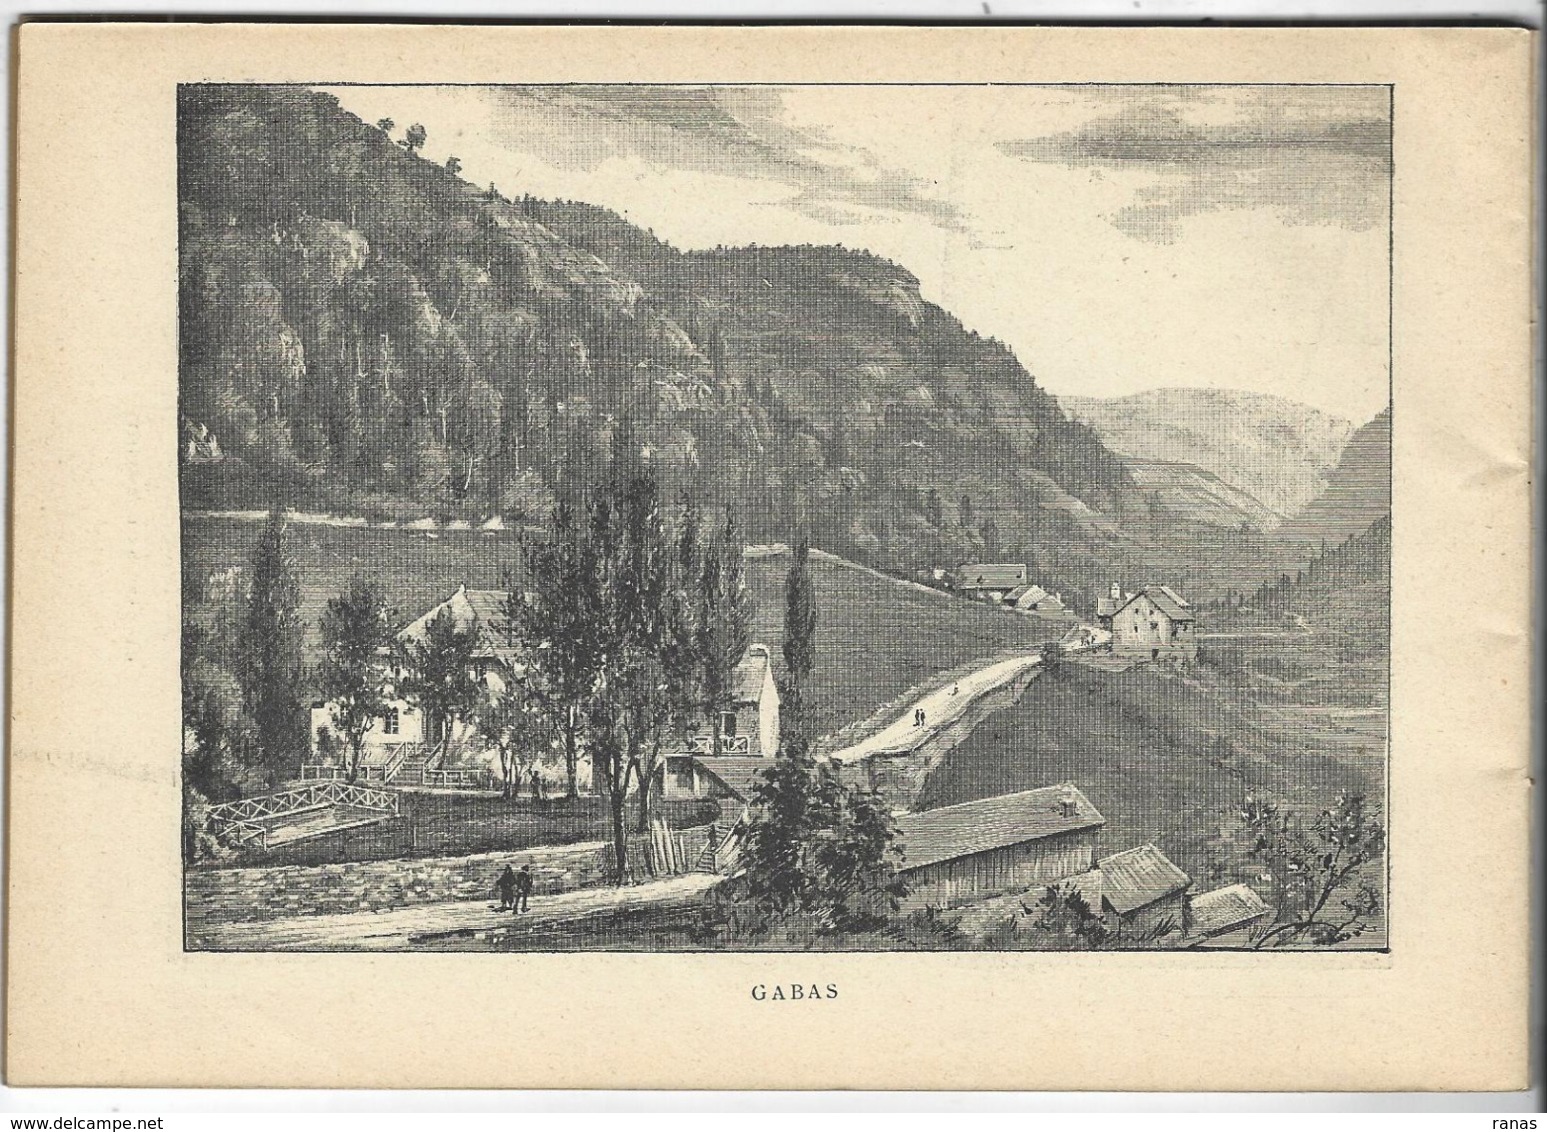 Basses Pyrénées France Album De A. KARL, Carte Gravures Texte Publicités 1893 - Toeristische Brochures